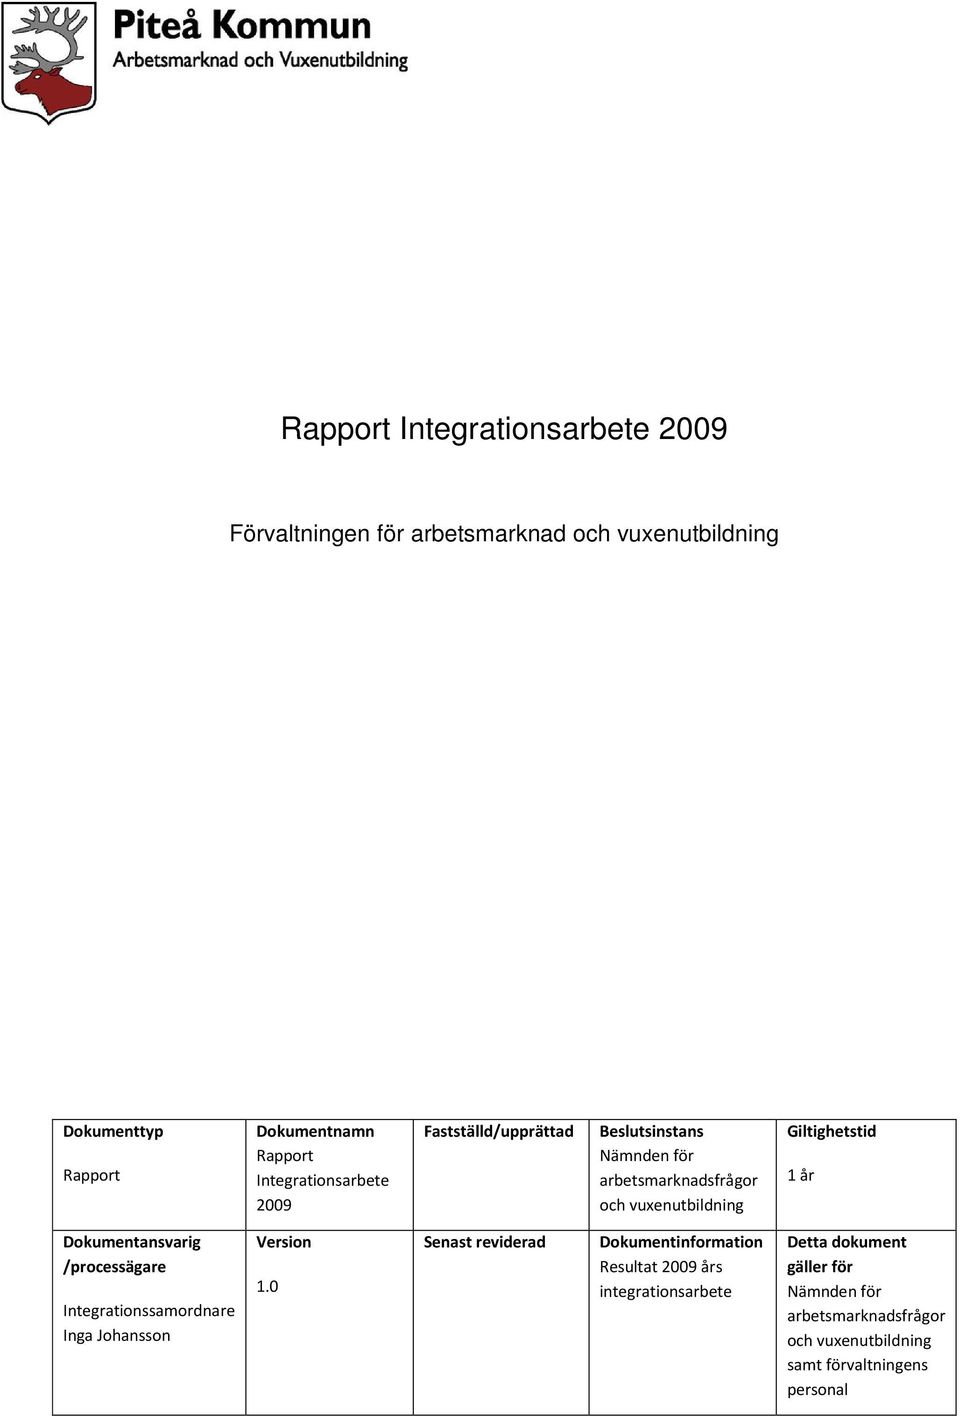 år Dokumentansvarig /processägare Integrationssamordnare Inga Johansson Version 1.